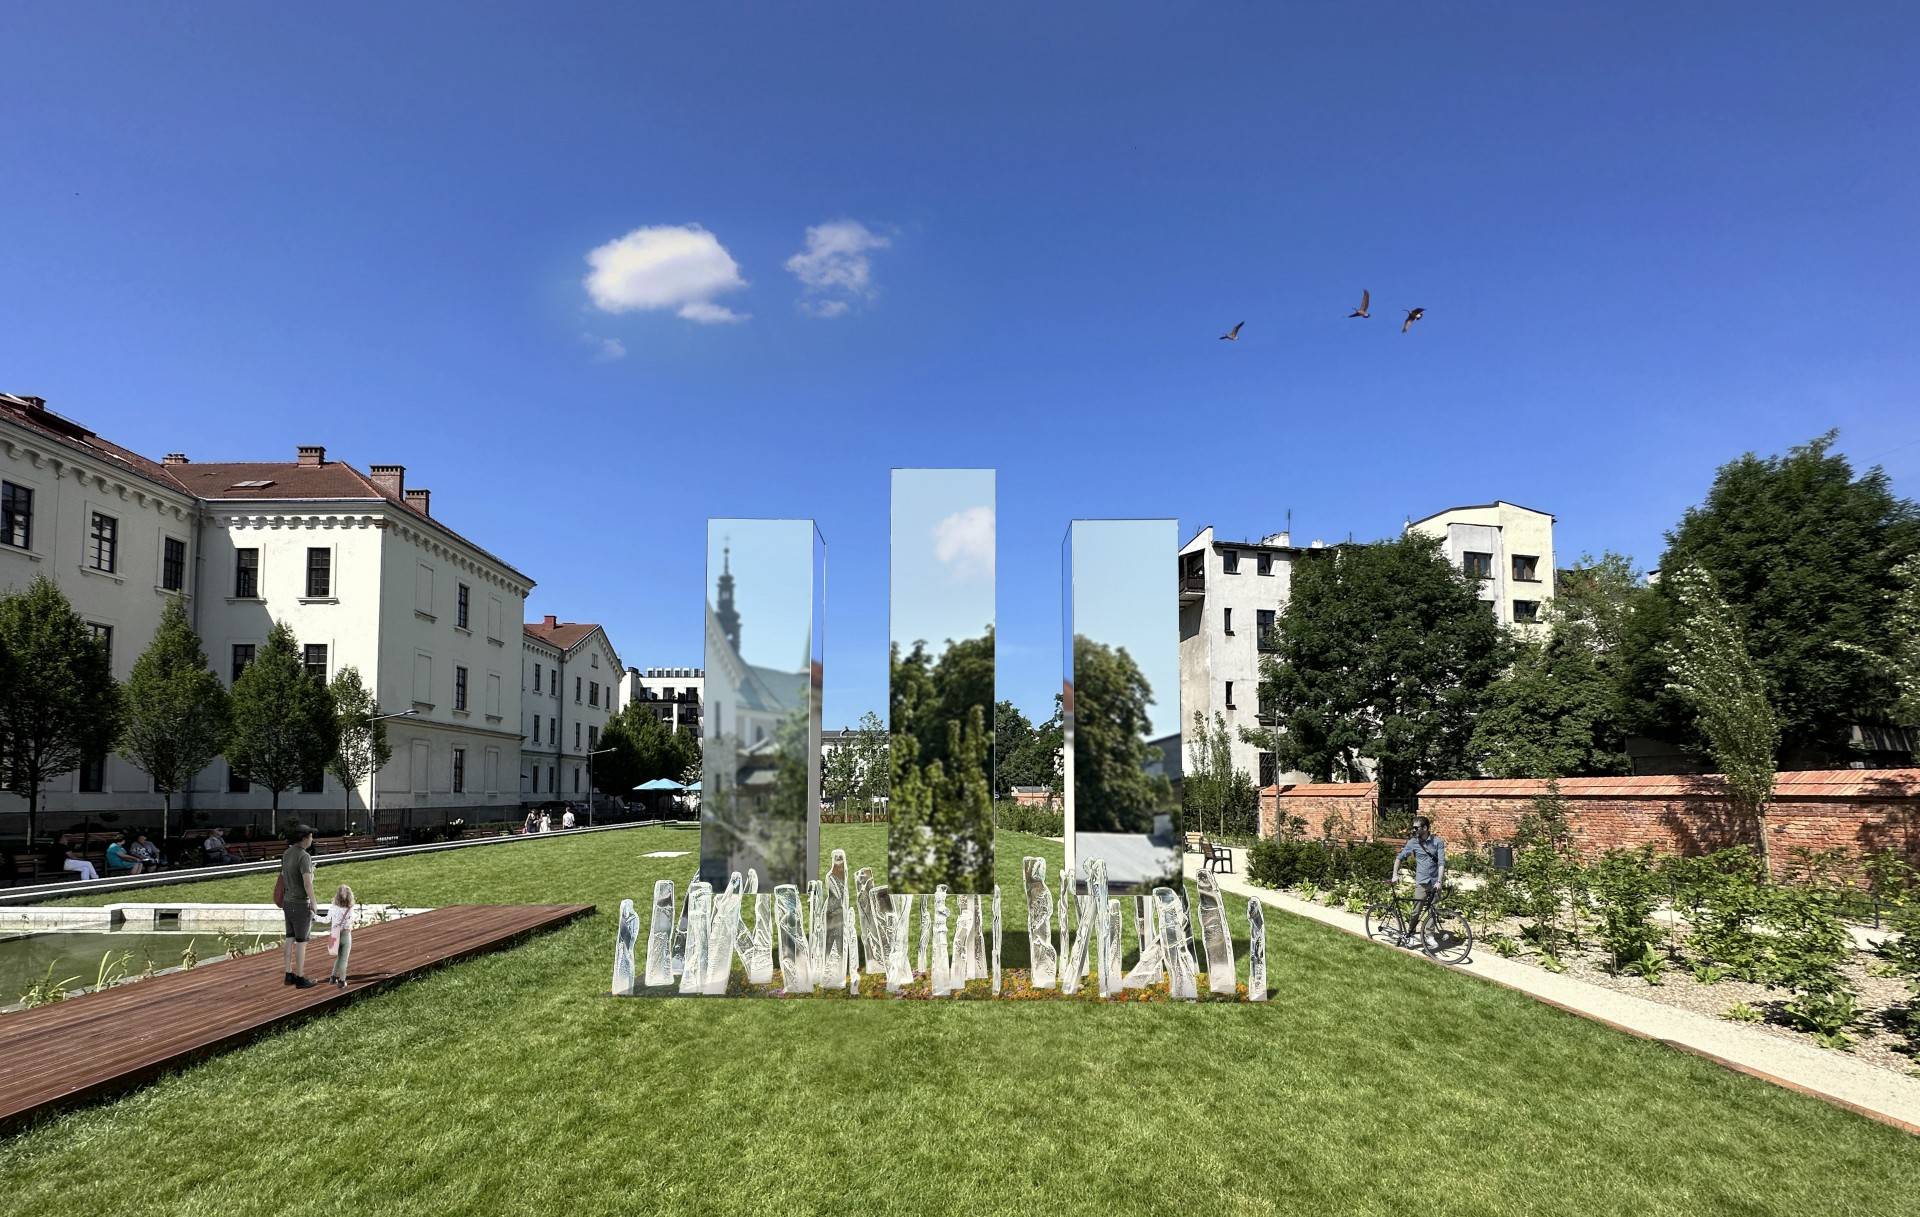 Rozstrzygnięto konkurs na pomnik Orląt Lwowskich, lokalizacja budzi kontrowersje